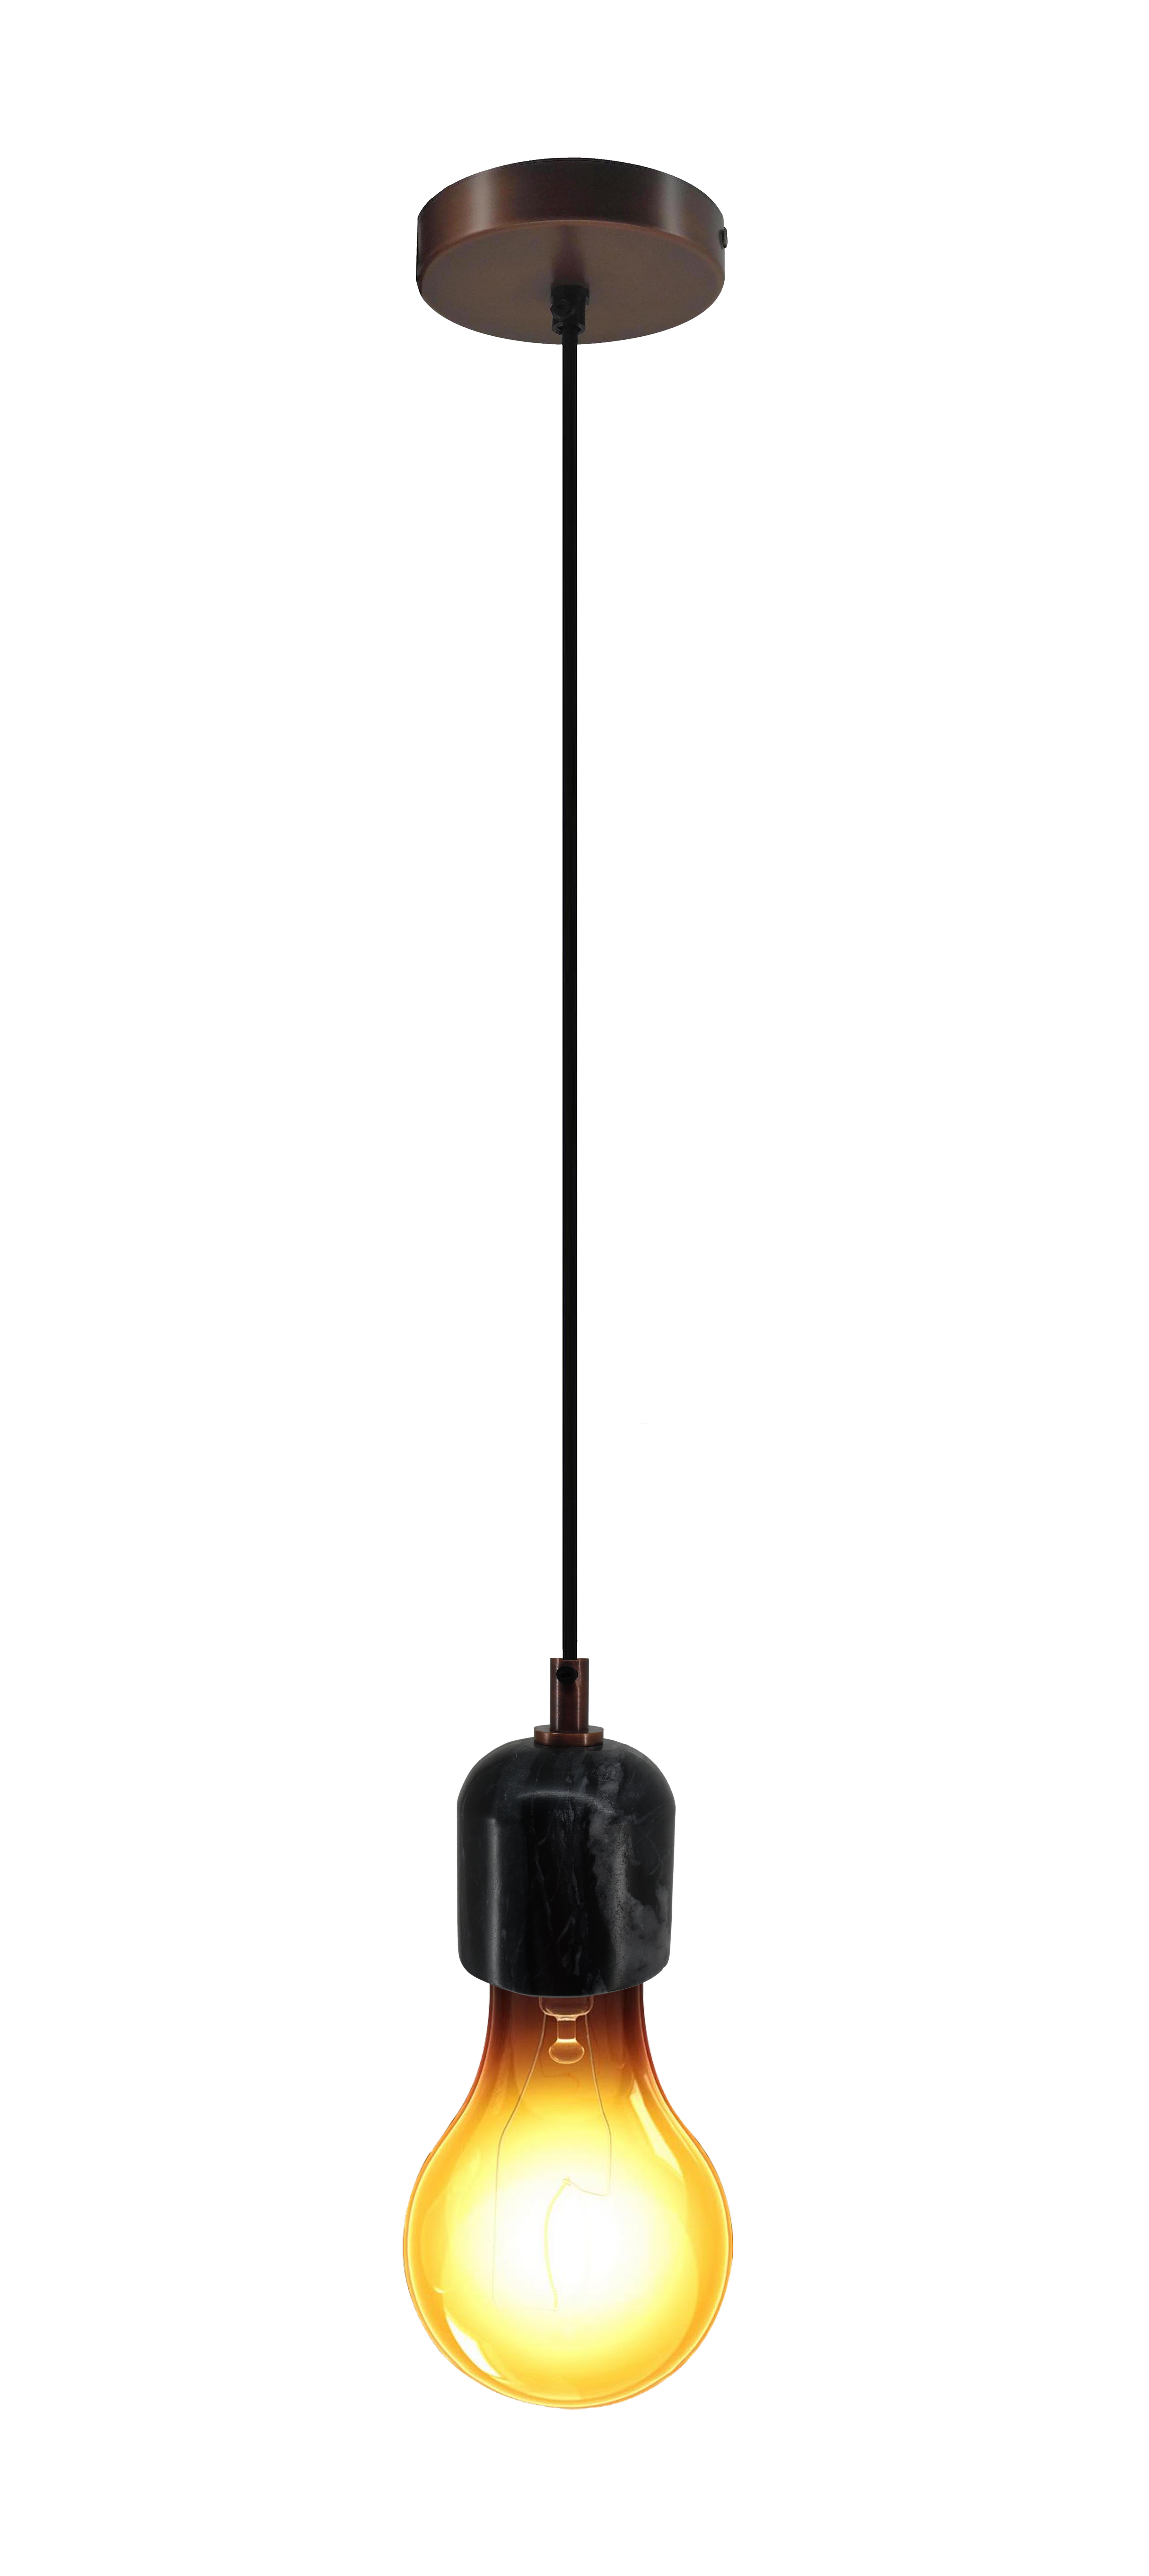 Solo Pendelleuchte minimalistisch schwarz, Einzel Hängelampe Loft Look | Wohnzimmer Esszimmer Leuchte